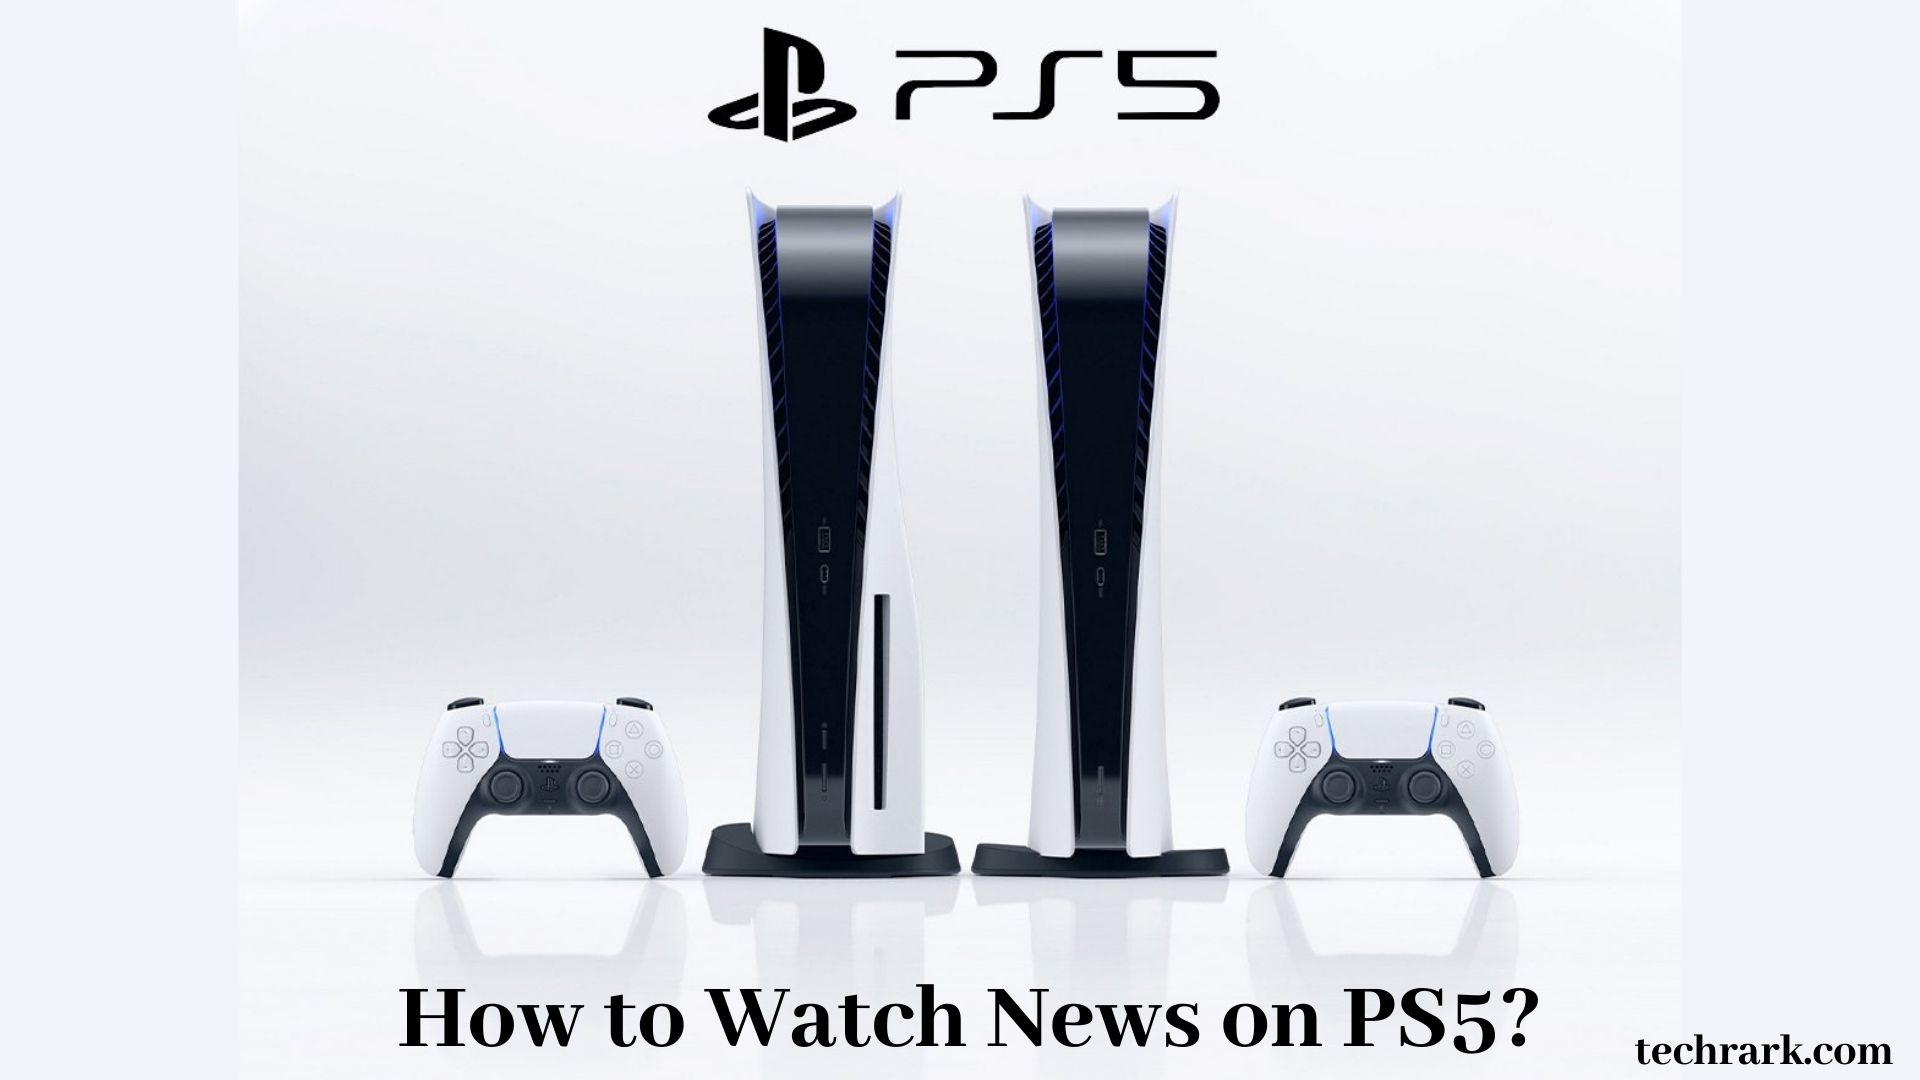 News on PS5